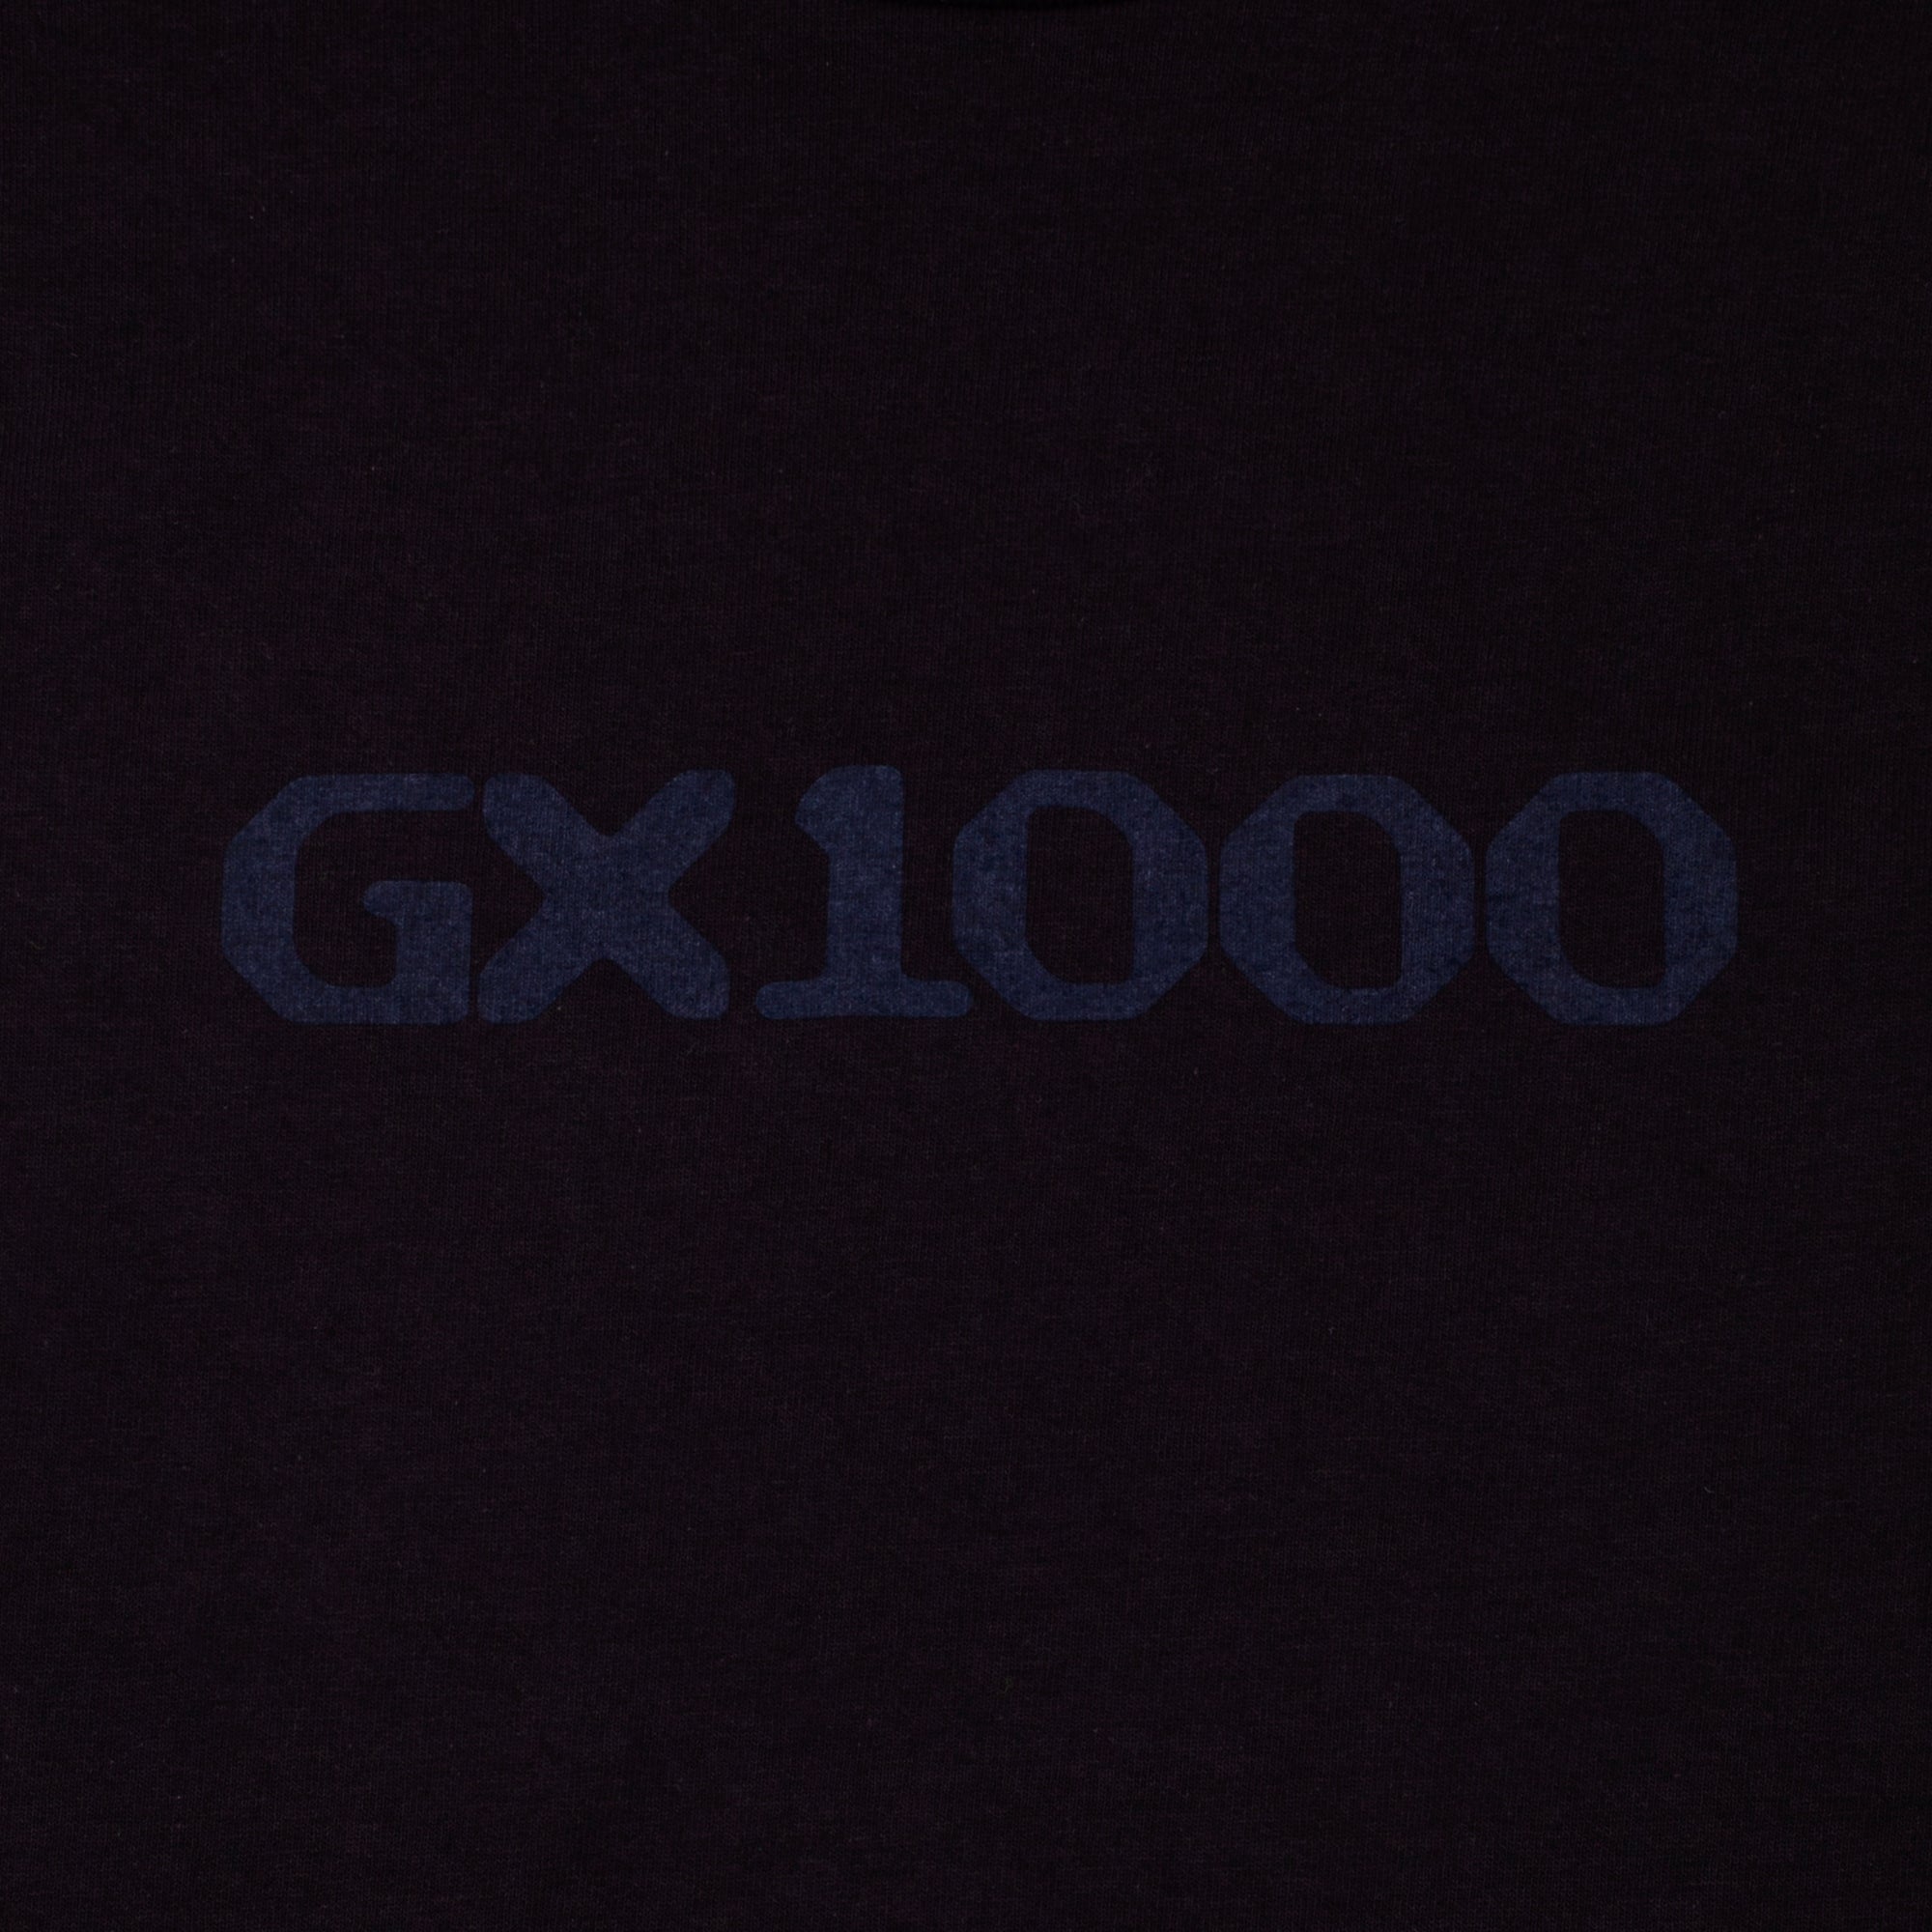 GX1000 - OG Logo Tee "Black"